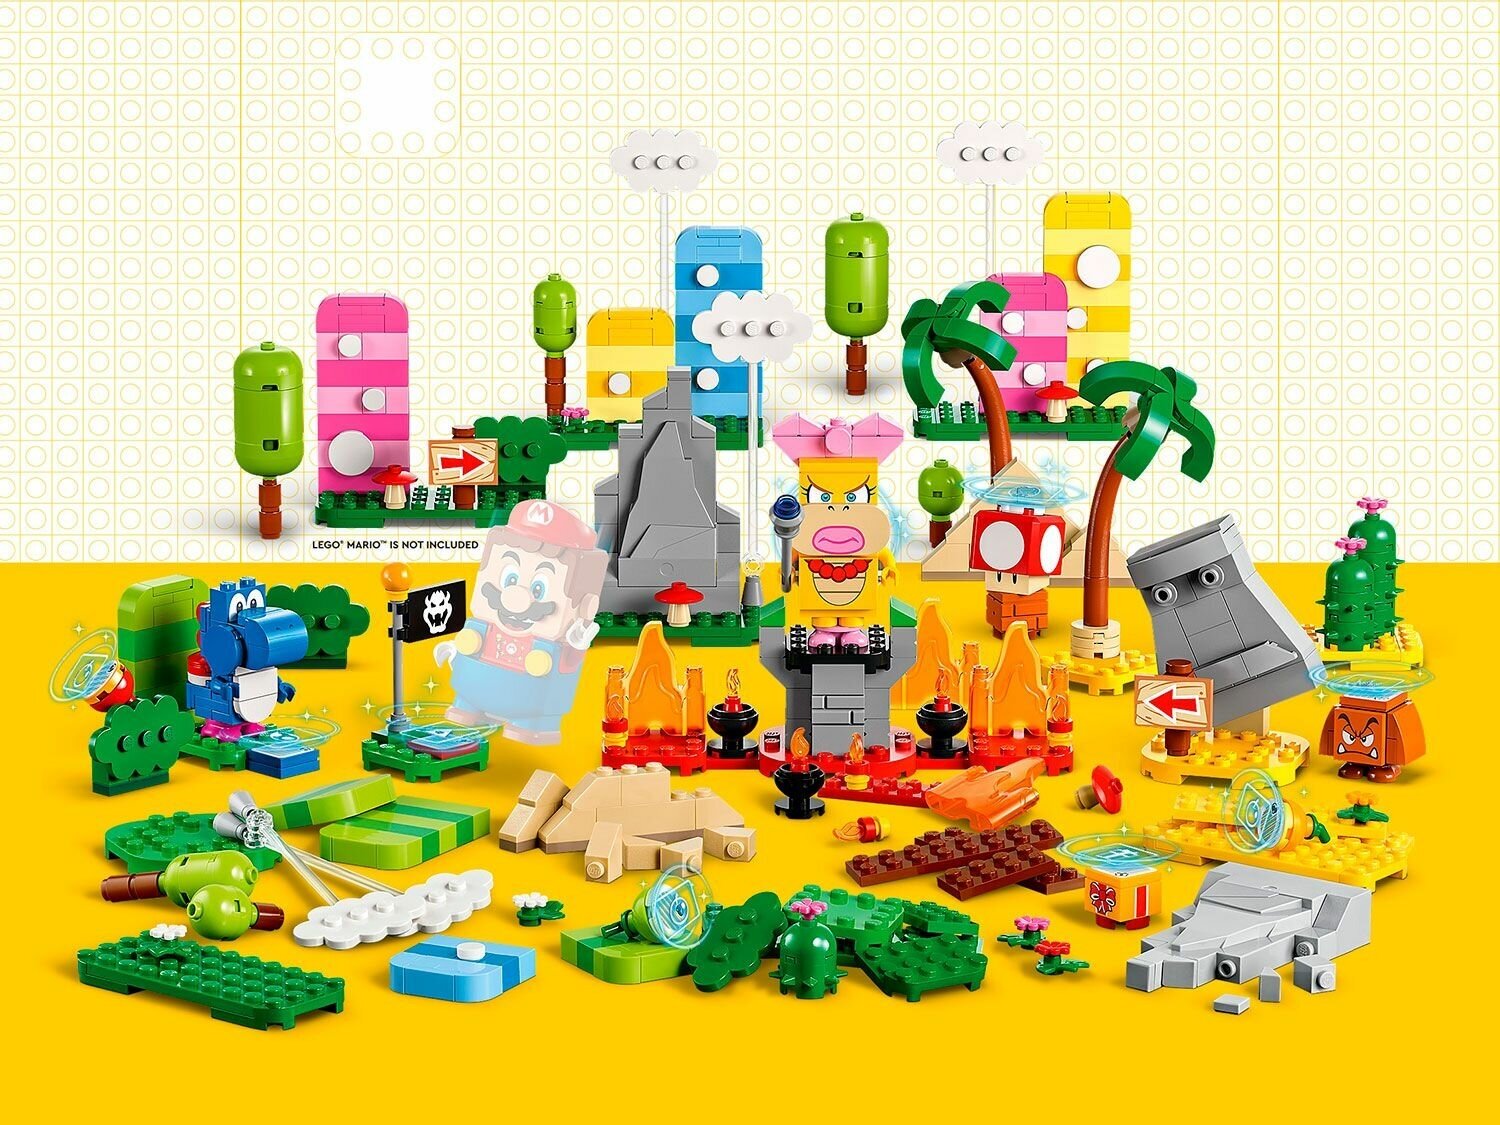 Конструктор Lego ® Super Mario™ 71418 Набор-дополнение «Инструменты для творчества»